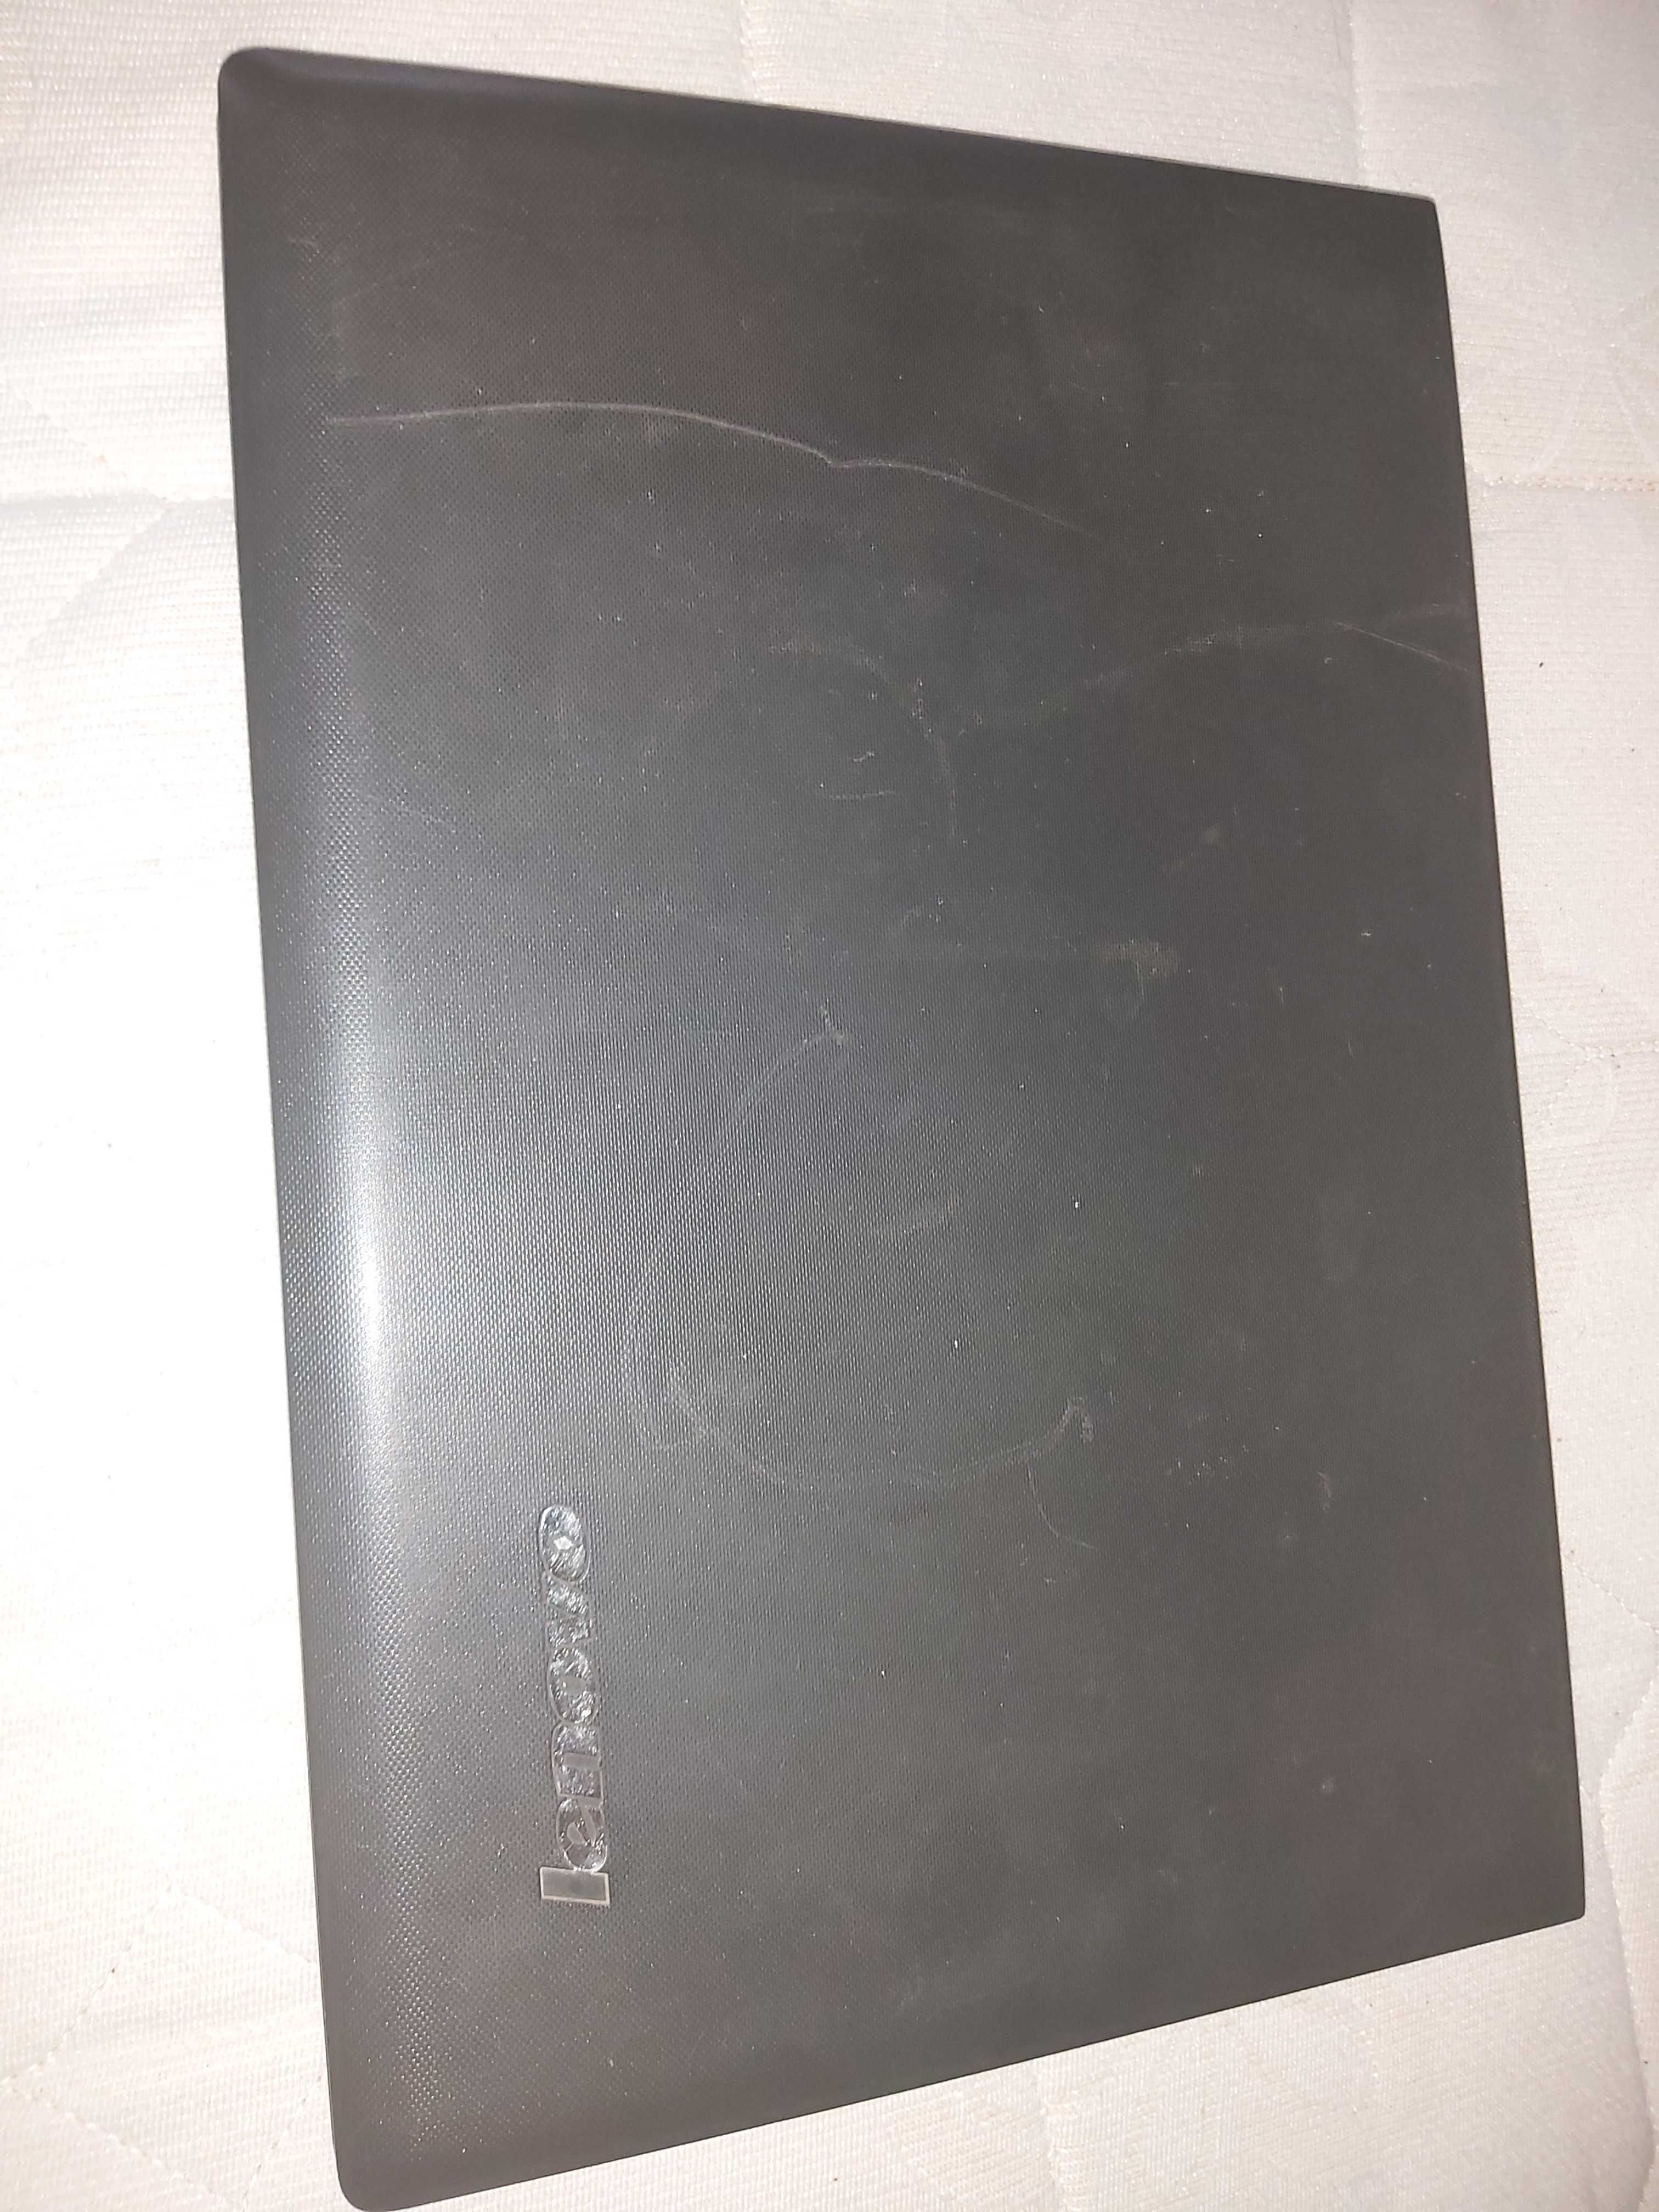 Laptop lenovo g50 70 model 20351